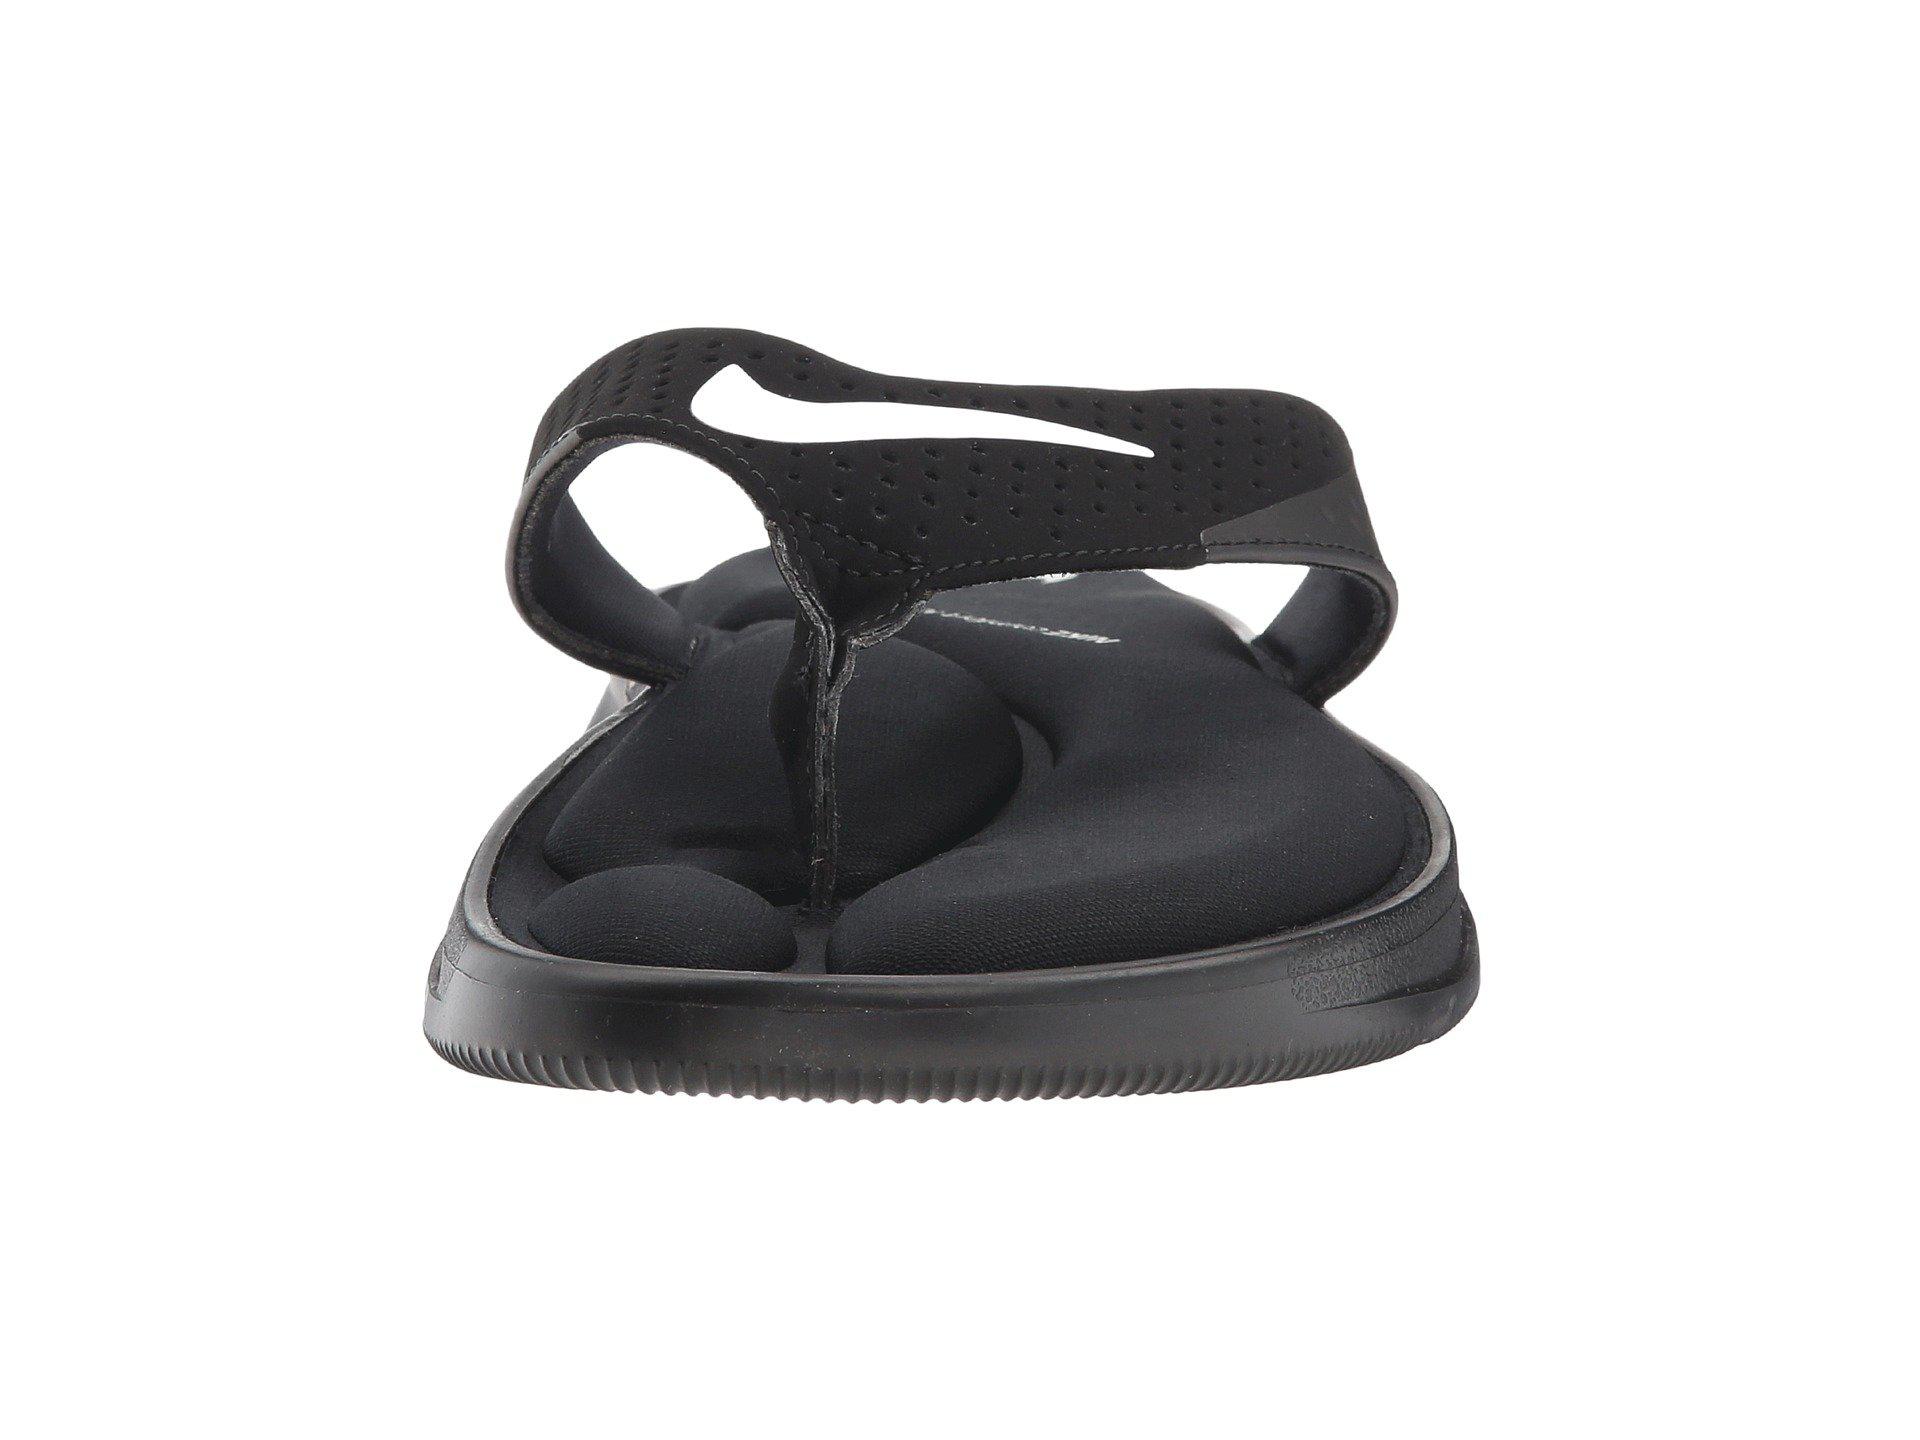 Nike Rubber Ultra Comfort Thong S 916831-001 in Black/White (Black) for Men  - Lyst